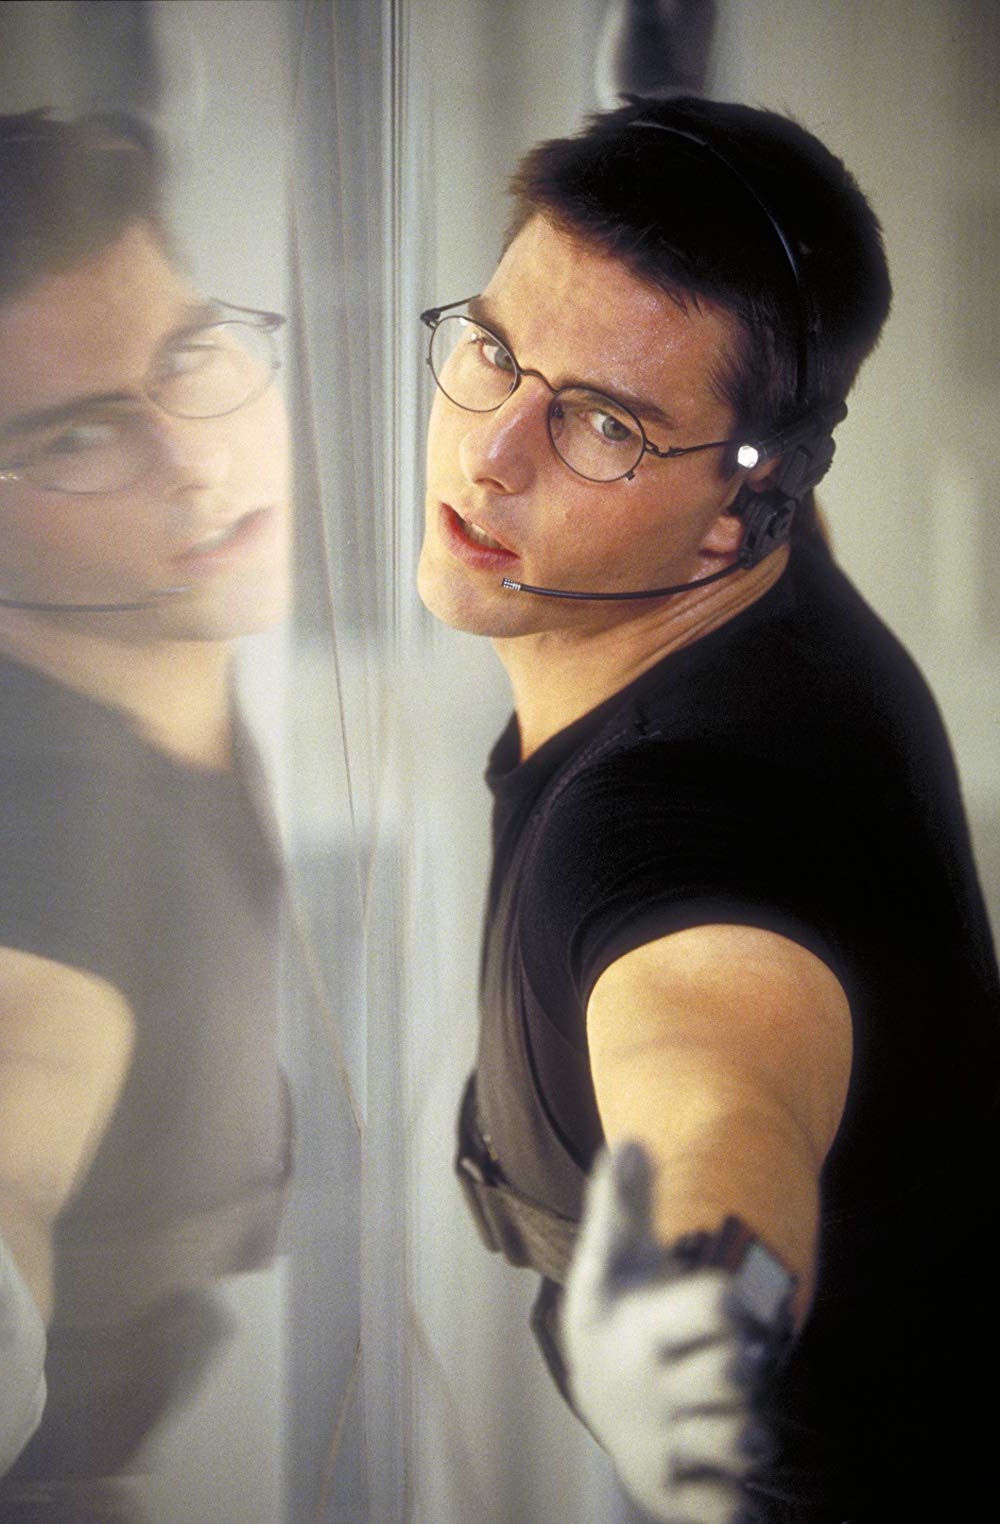 Dàn mỹ nam huyền thoại giờ ra sao: Tom Cruise, Brad Pitt U60 vẫn phong độ, Leonardo bị ngải heo nhập chưa bằng loạt nam thần hói dần đều - Ảnh 22.